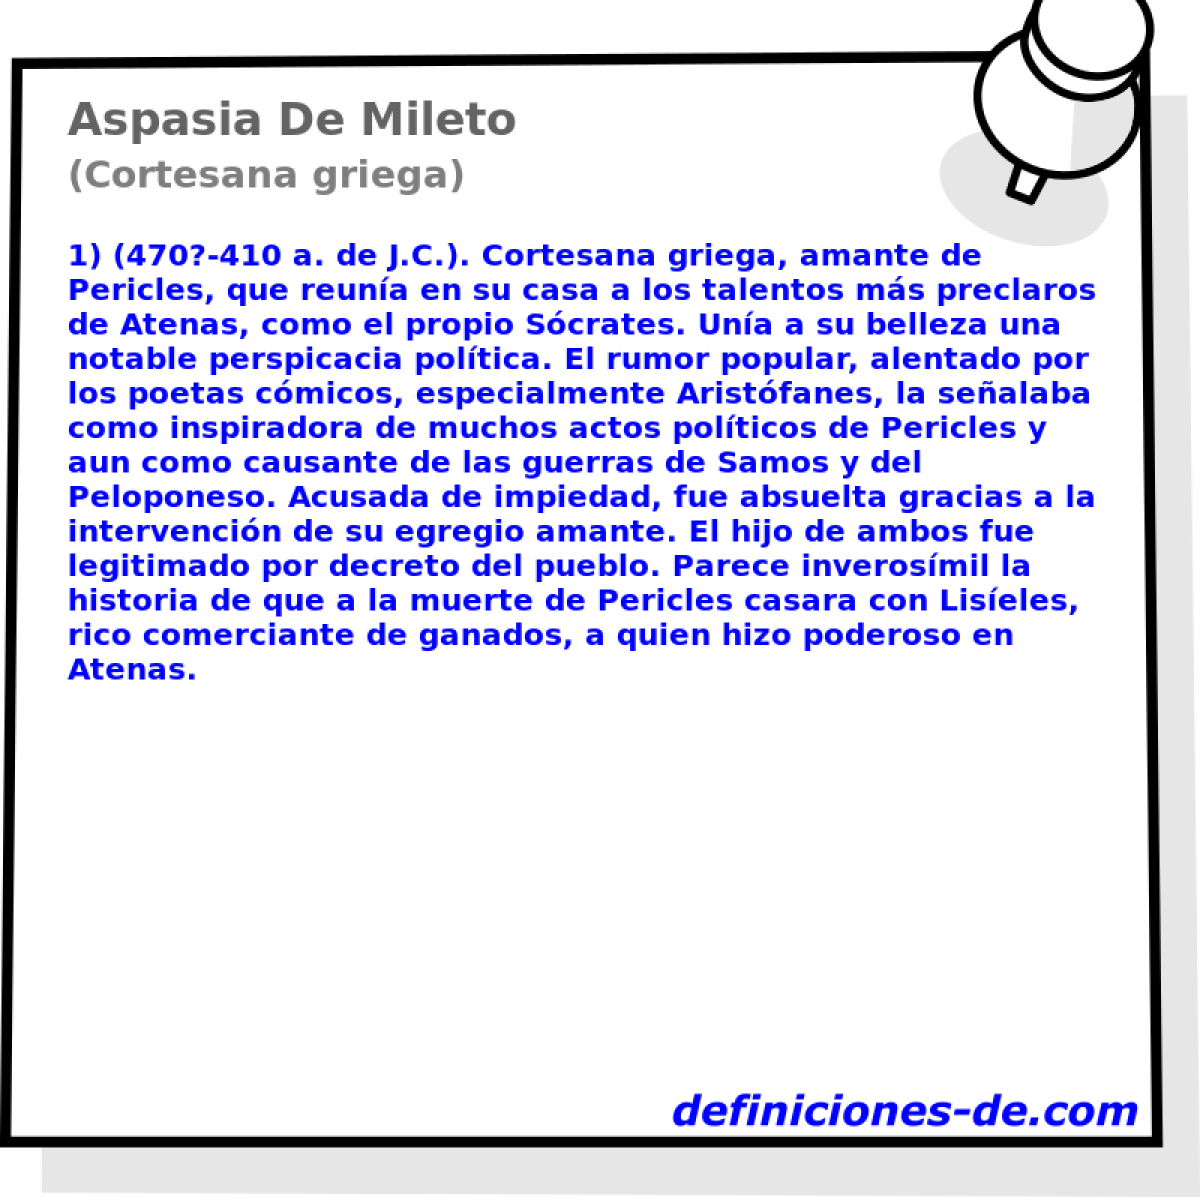 Aspasia De Mileto (Cortesana griega)